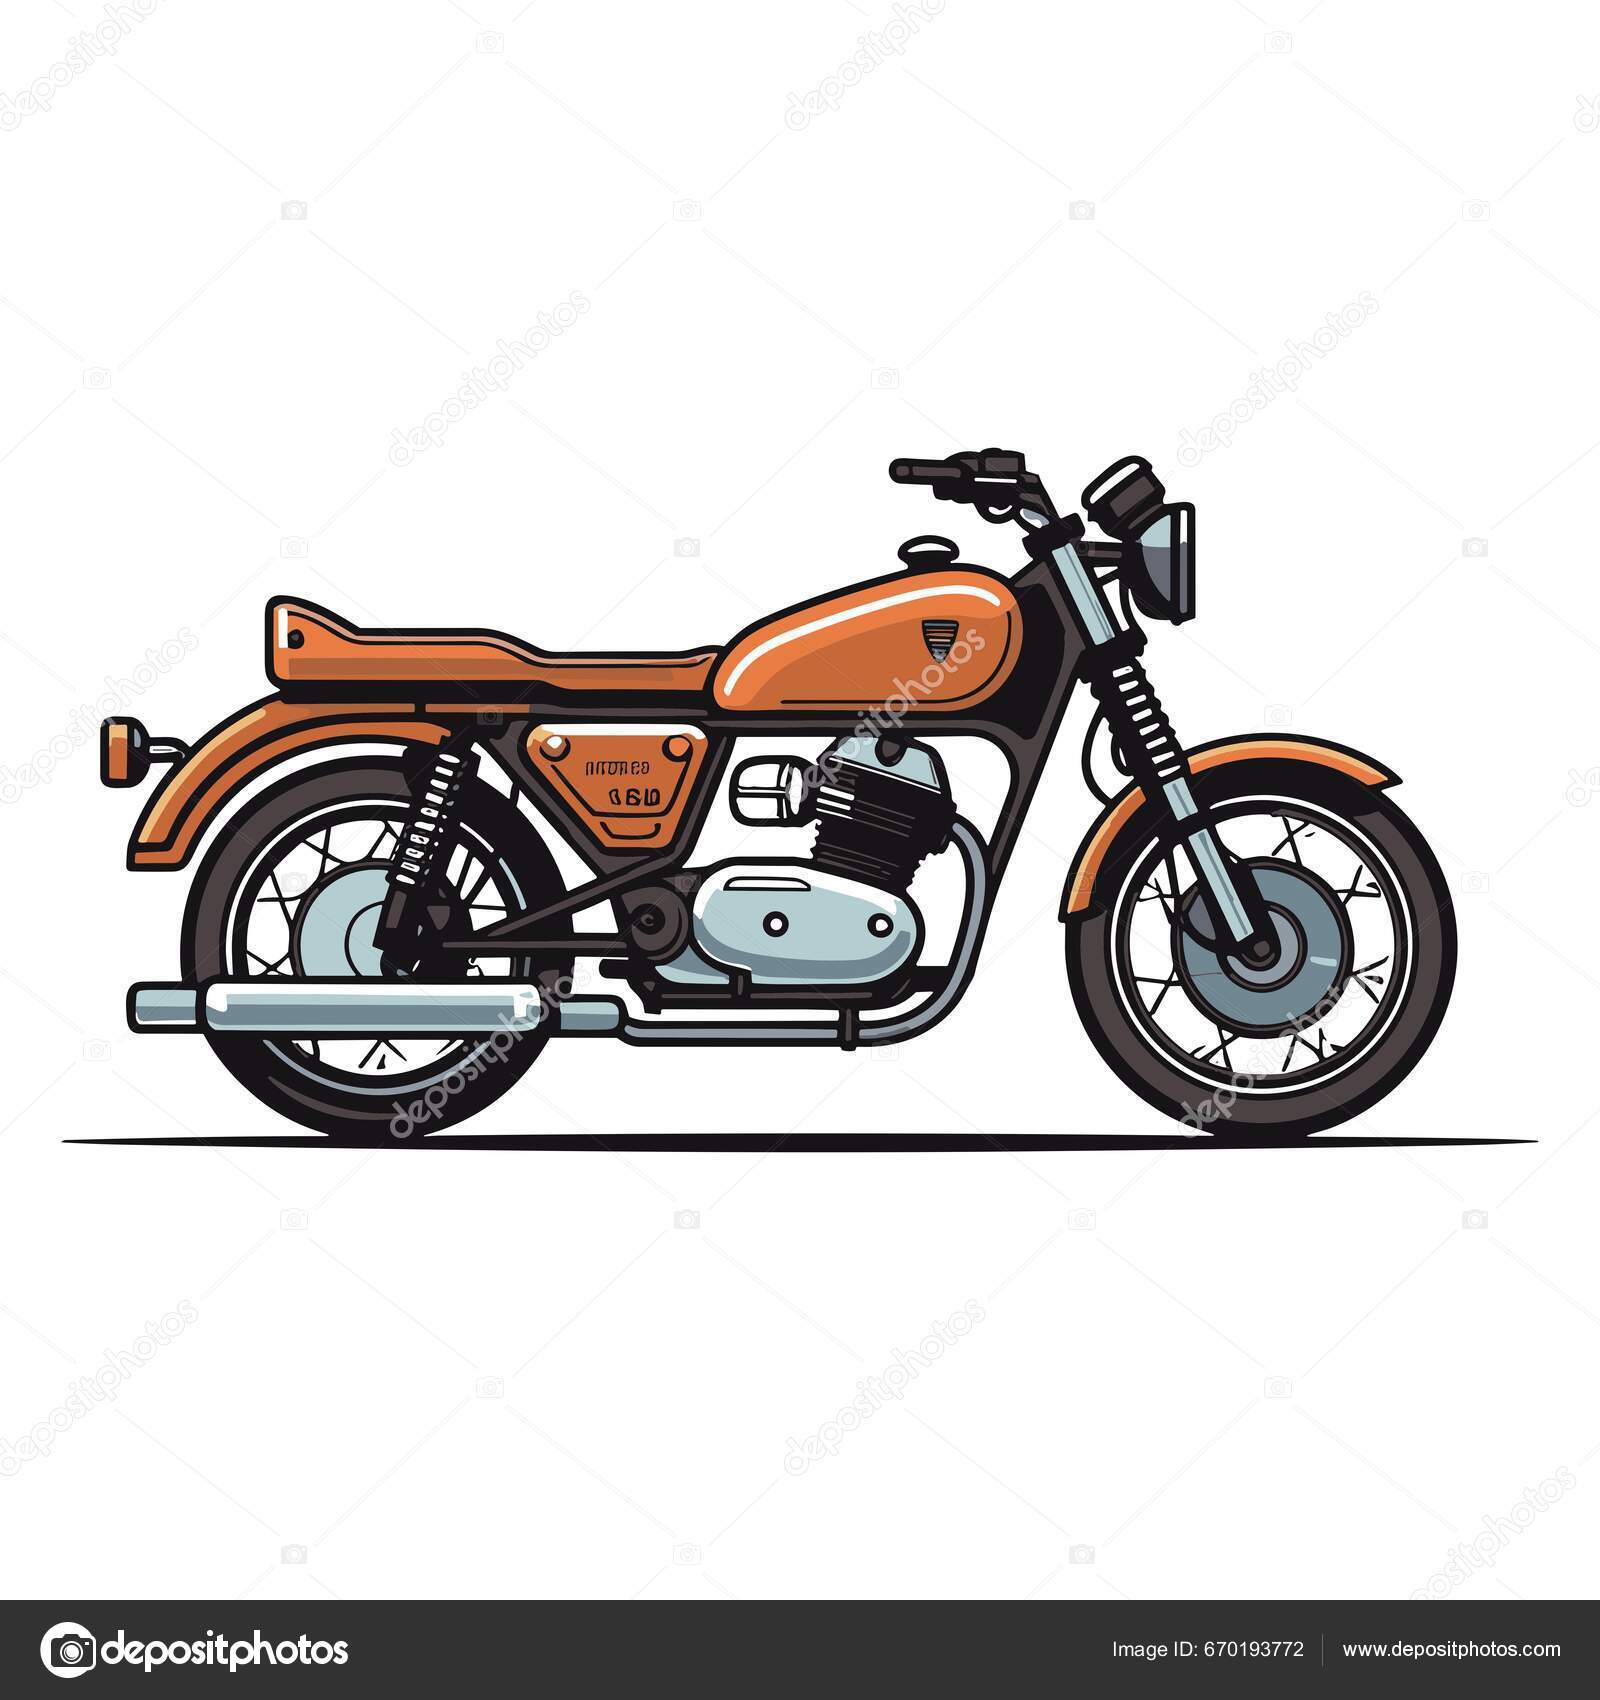 Desenho de motociclista em uma motocicleta, ilustração vetorial de contorno